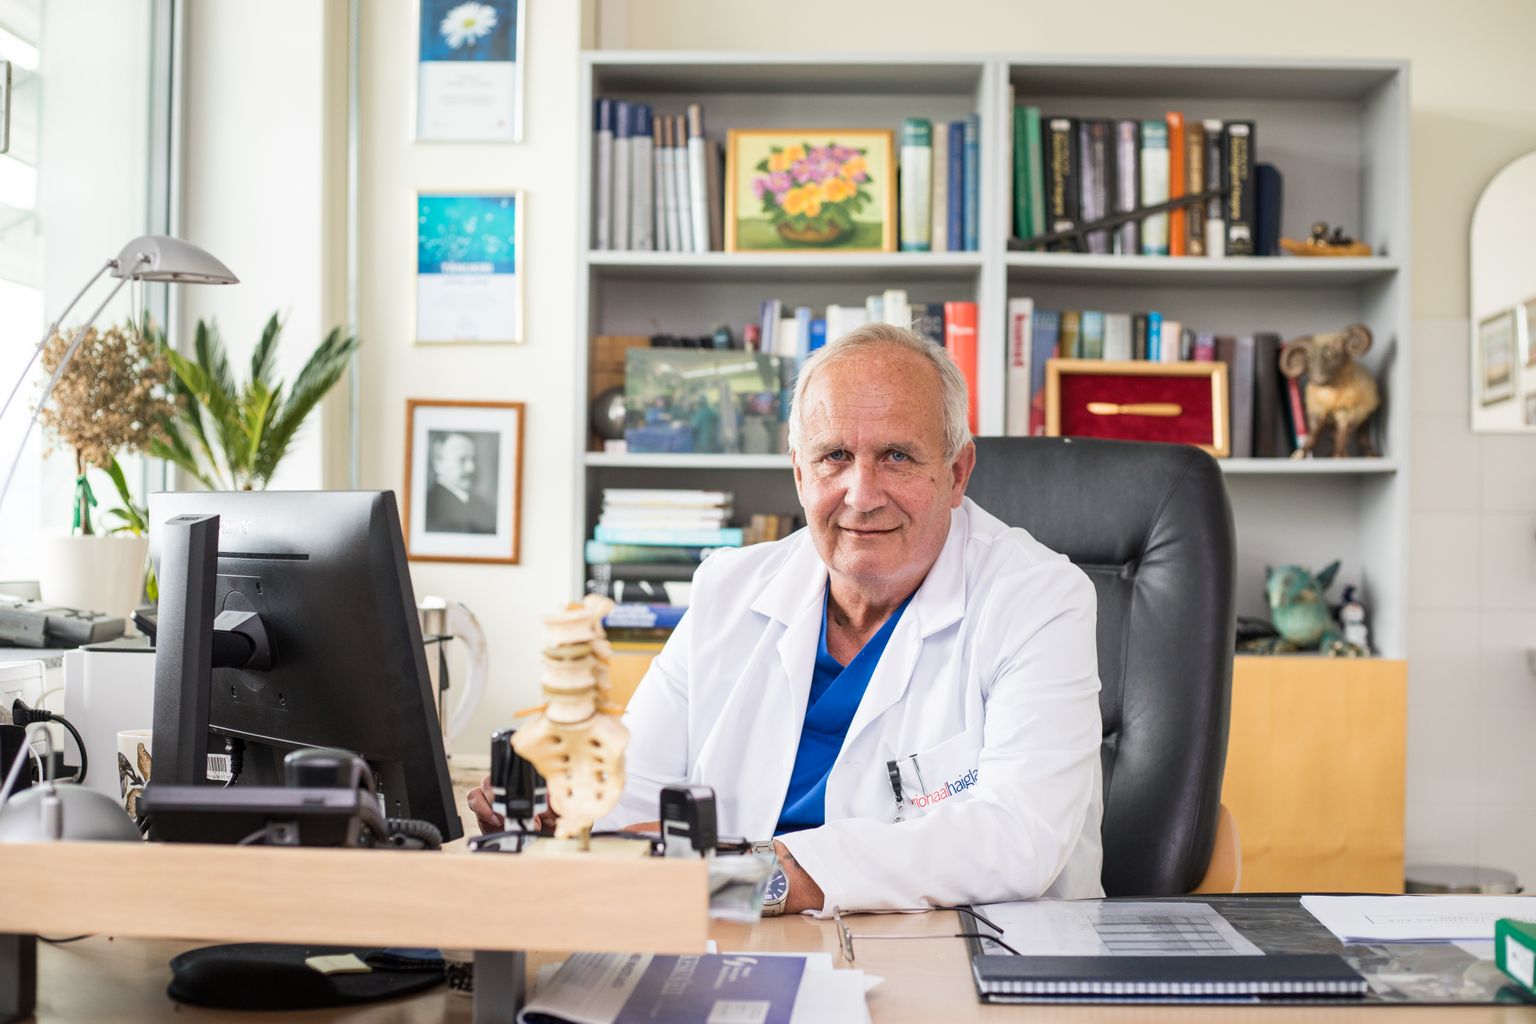 NEUROKIRURGIAKESKUSES tehakse 1200–1300 operatsiooni aastas. ‘’Igal päeval nädalas opereerime, vahel ka kaks korda päevas,’’ ütleb dr Leiner.